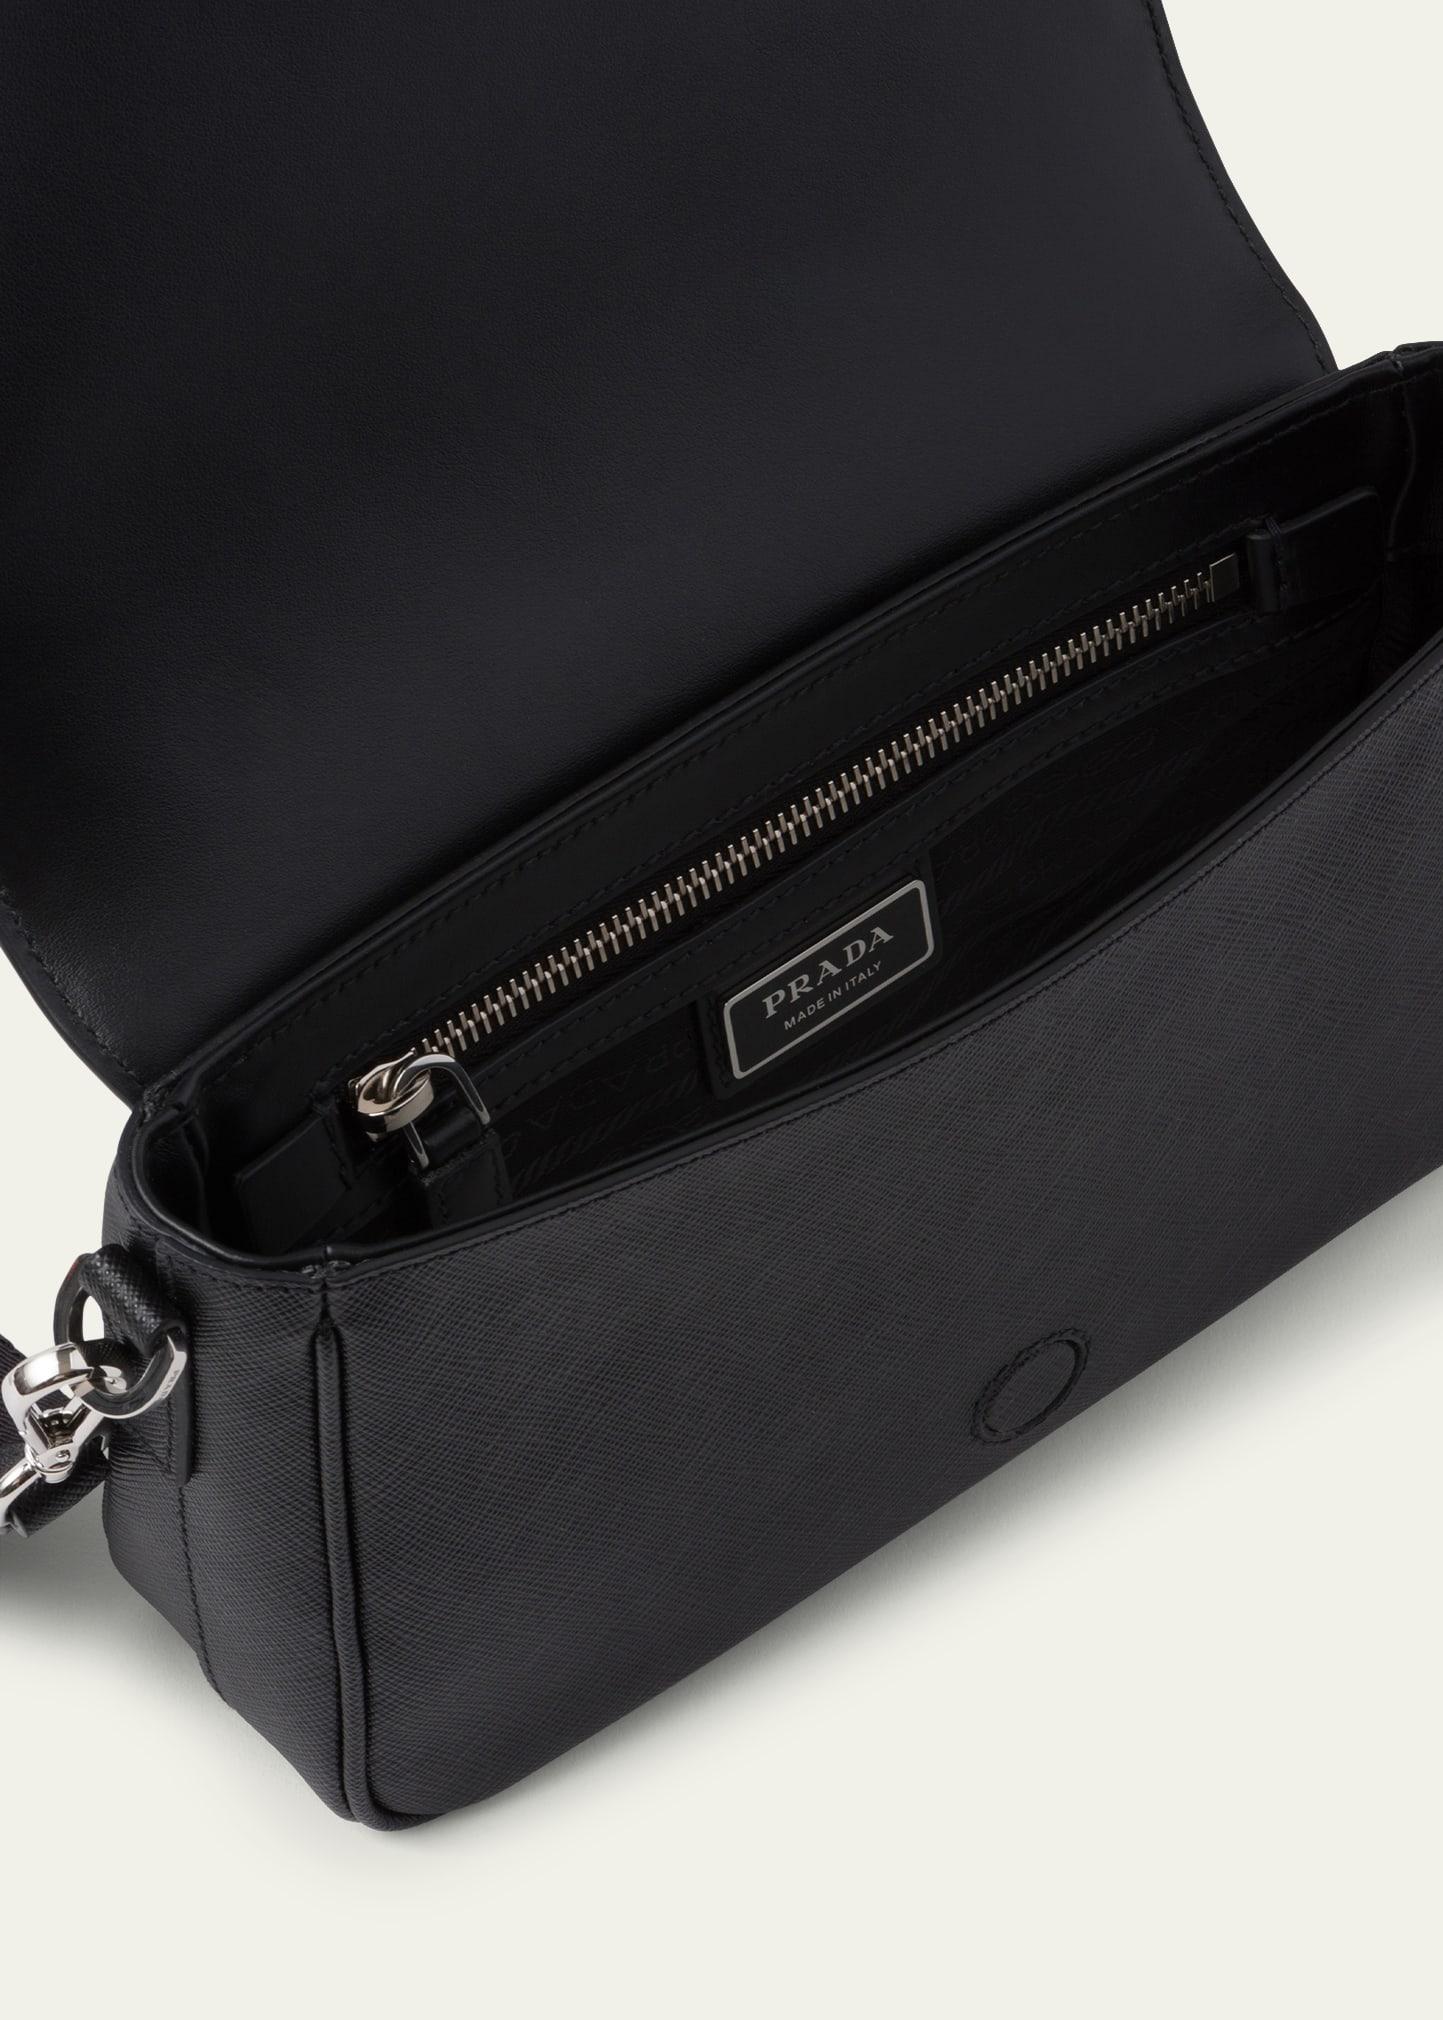 Prada - Men's Saffiano Leather Shoulder Bag Messenger - Black - Synthetic